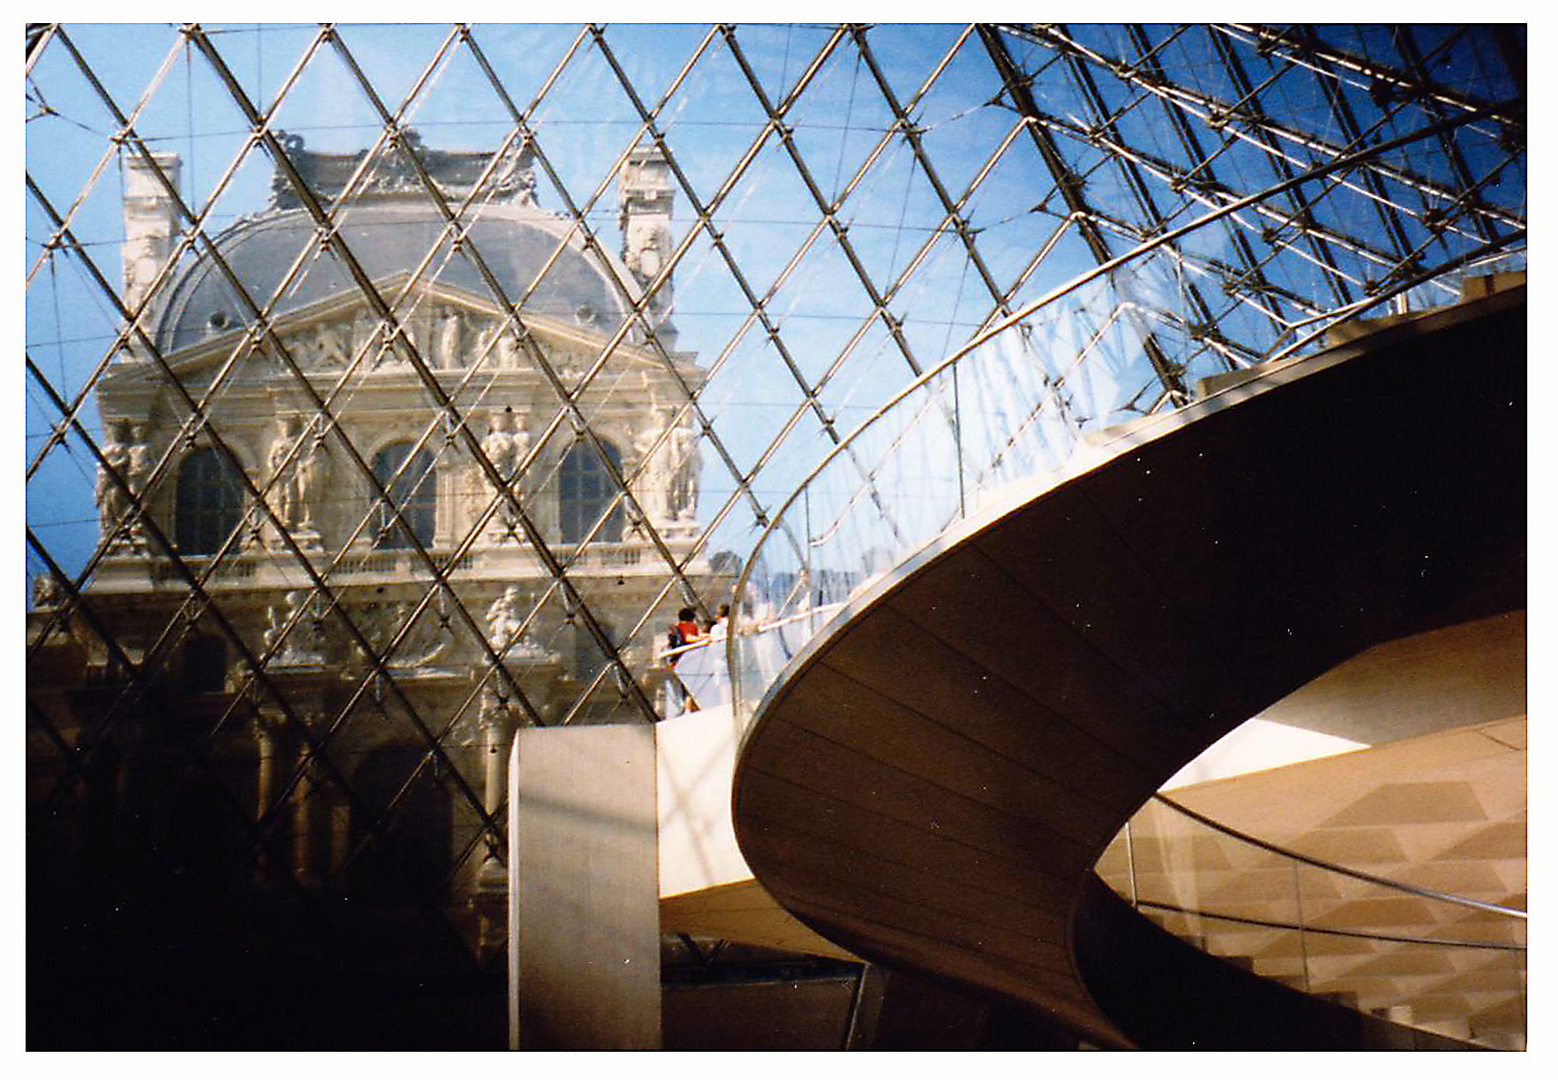 In der schönen Eingangspyramide des Louvre.